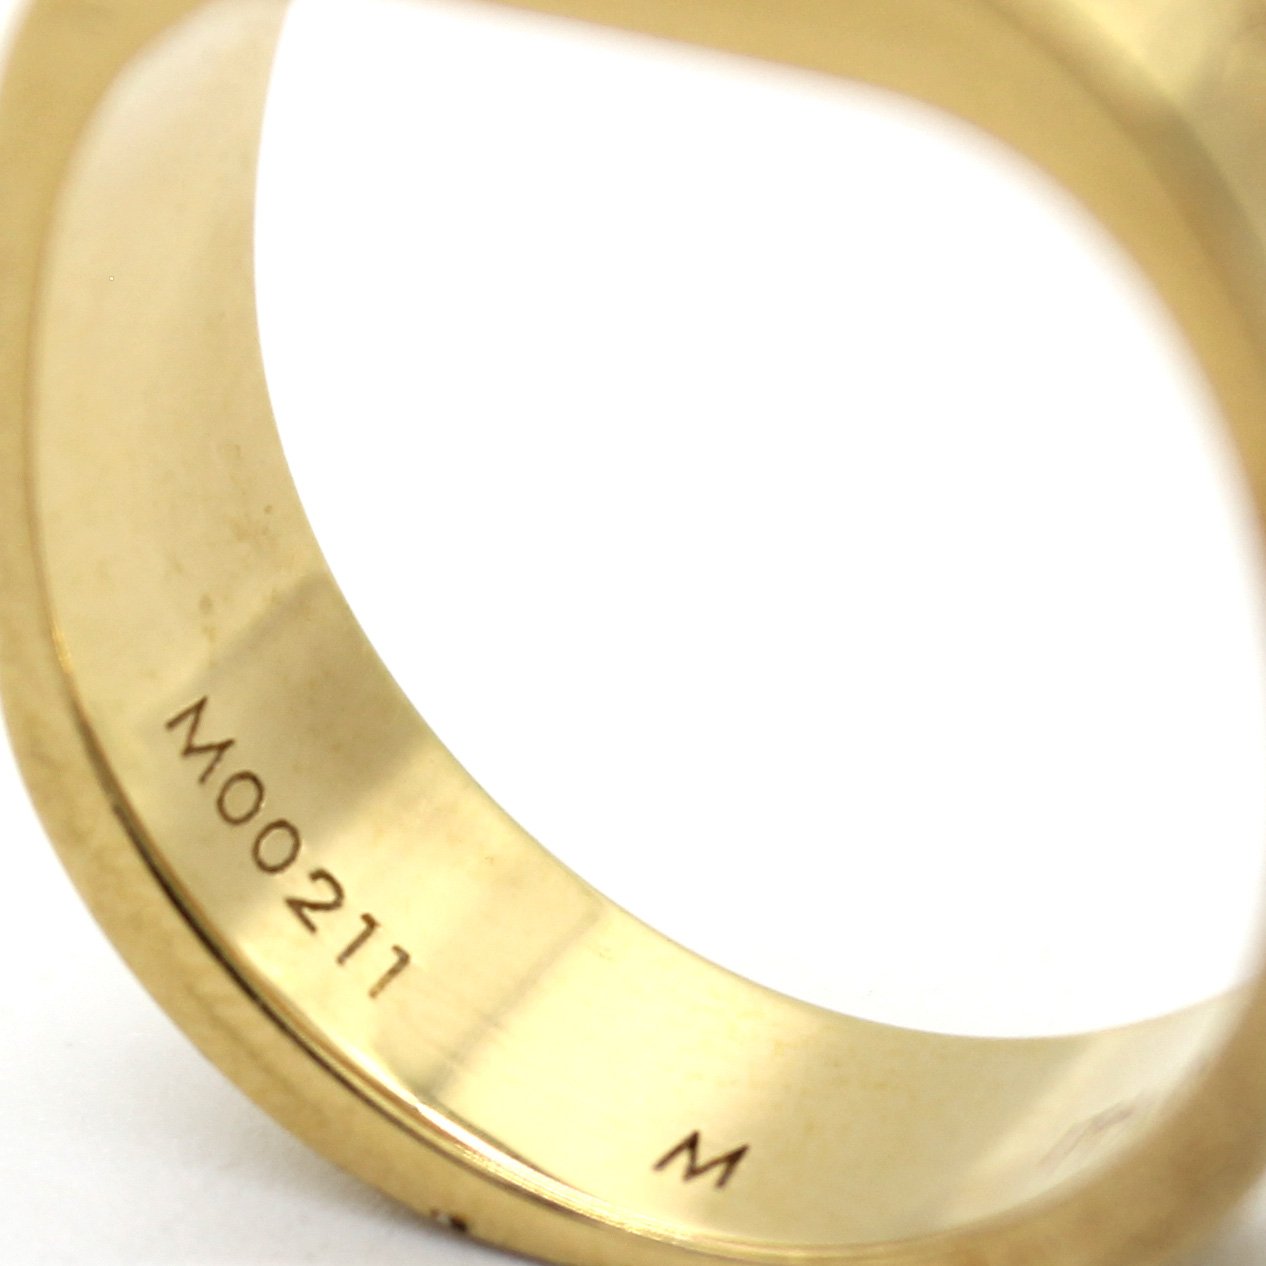 Louis Vuitton Nanogram Ring - Brass Band, Rings - LOU695731